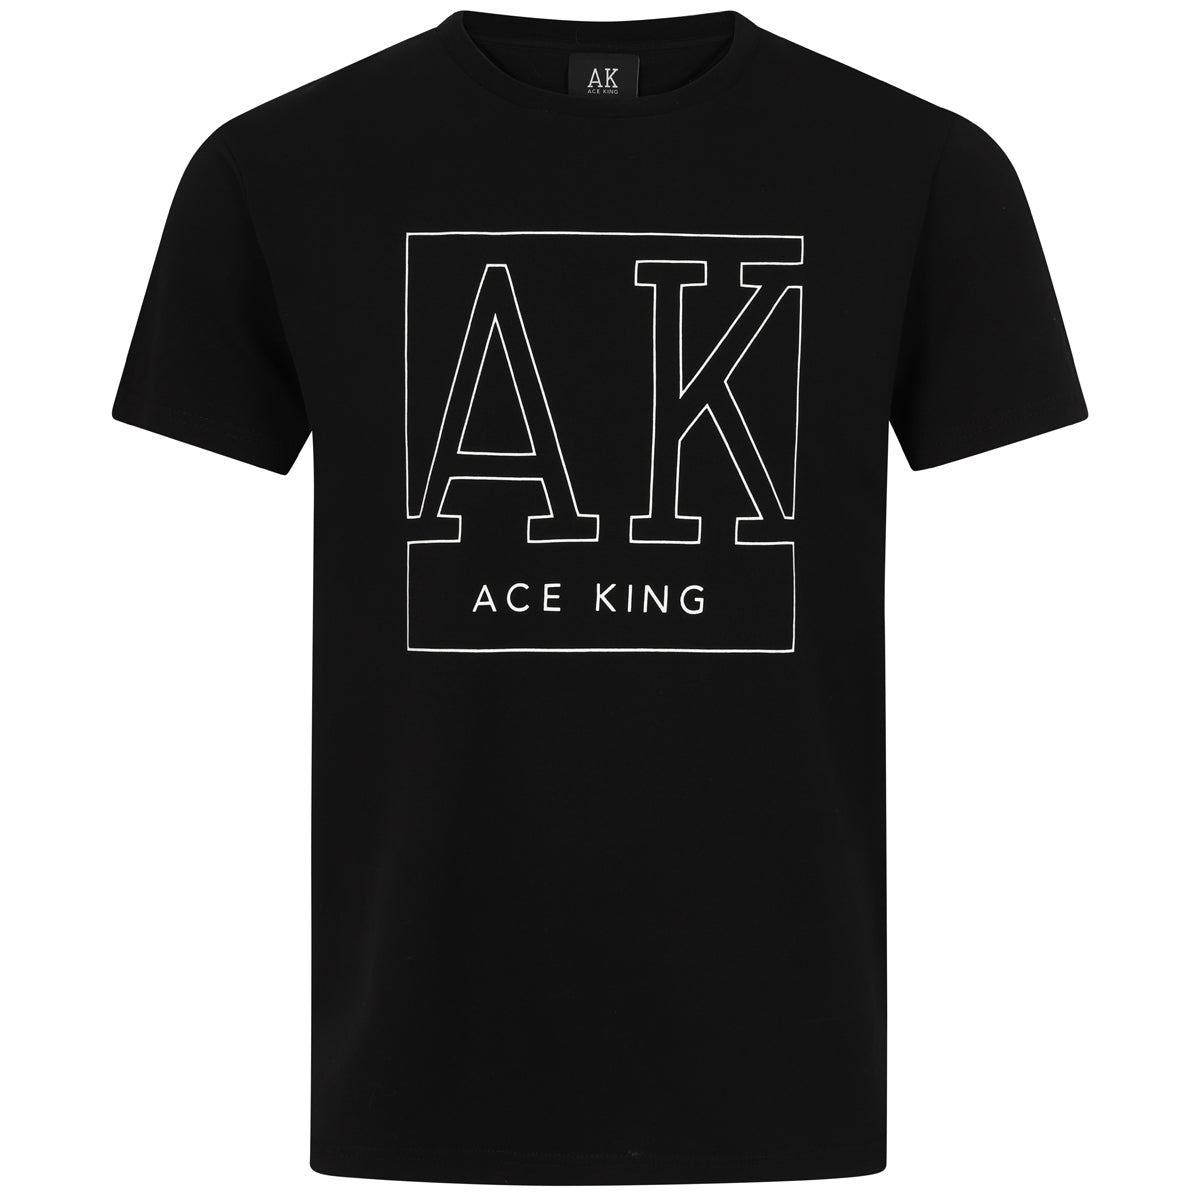 AK Graphic Print T-shirt – Black